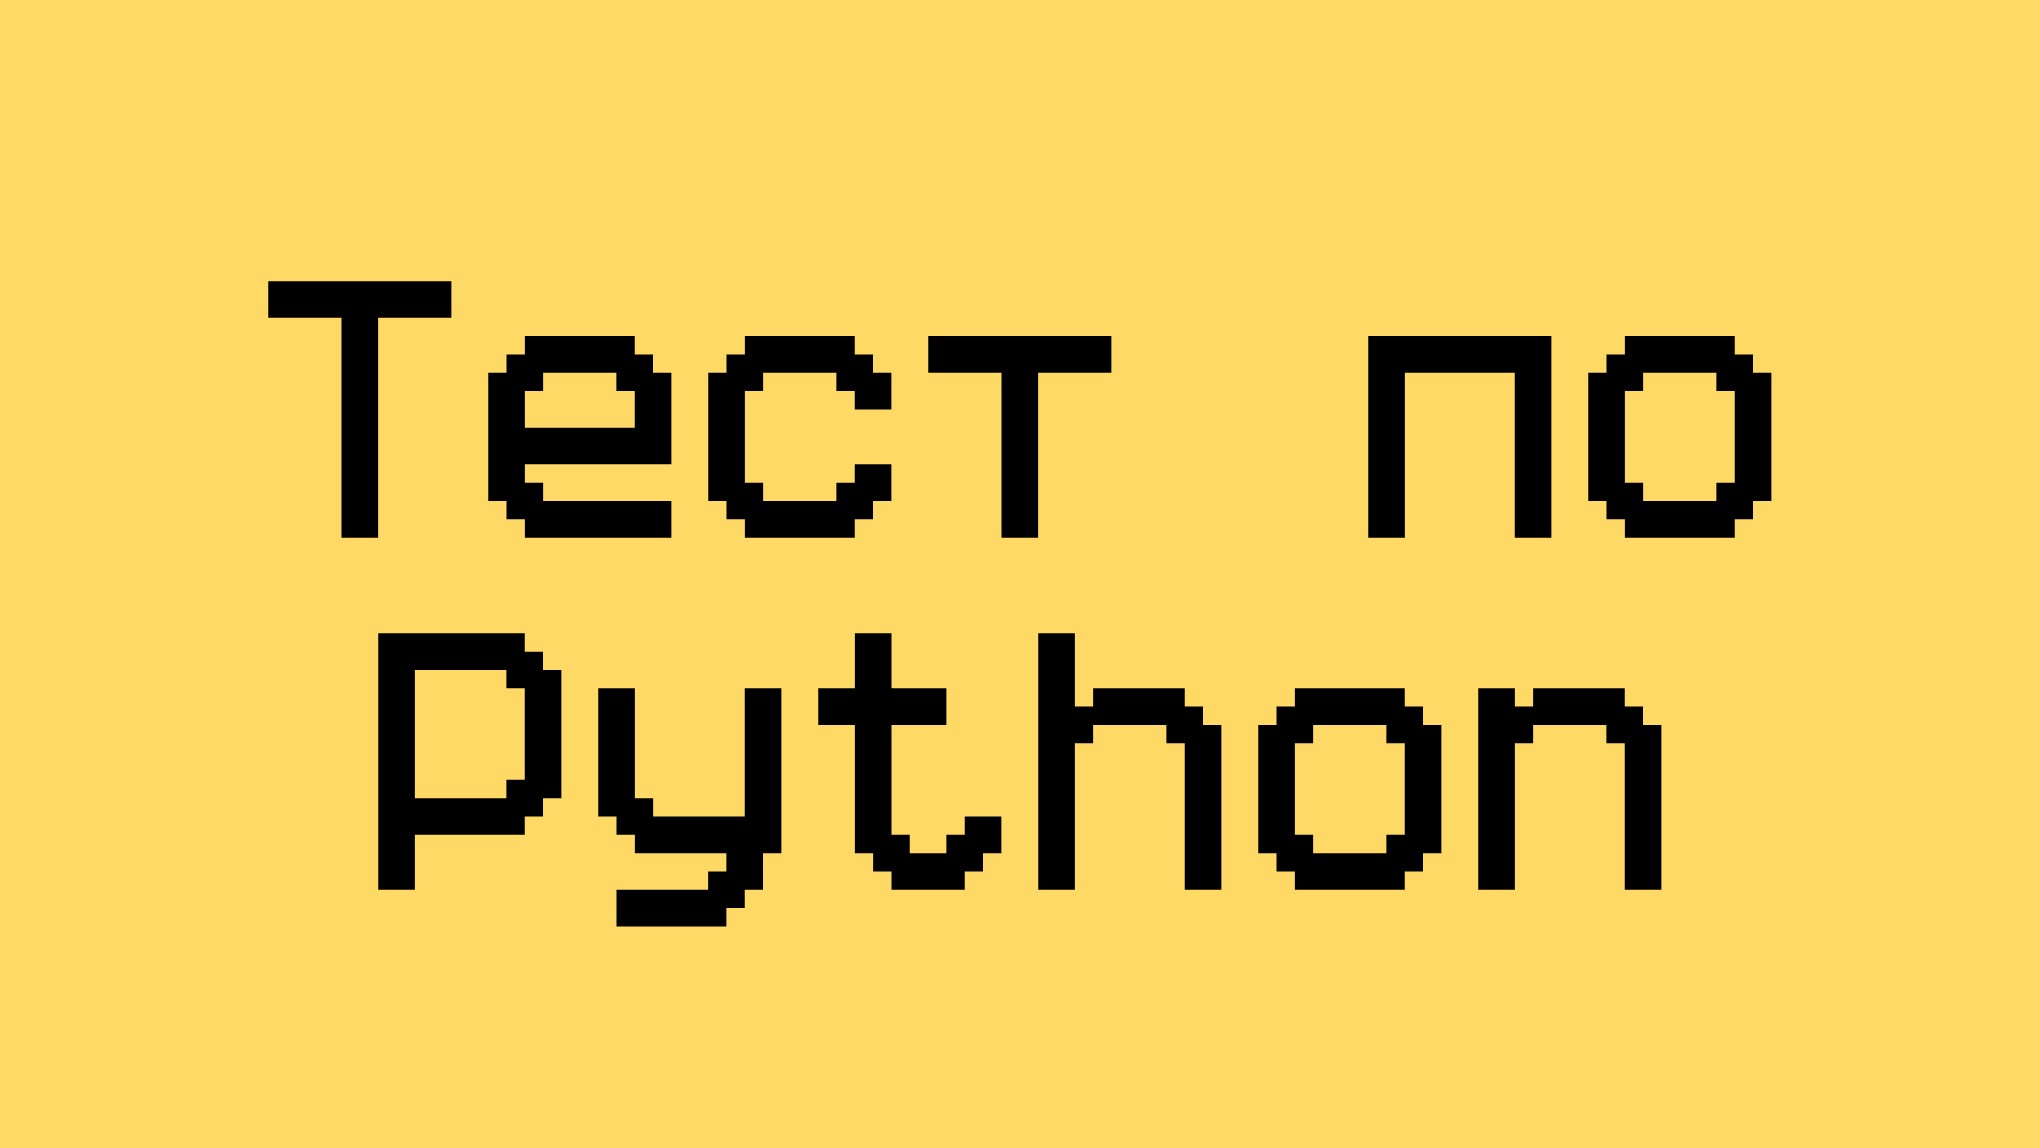 Тест по языку Python для начинающих